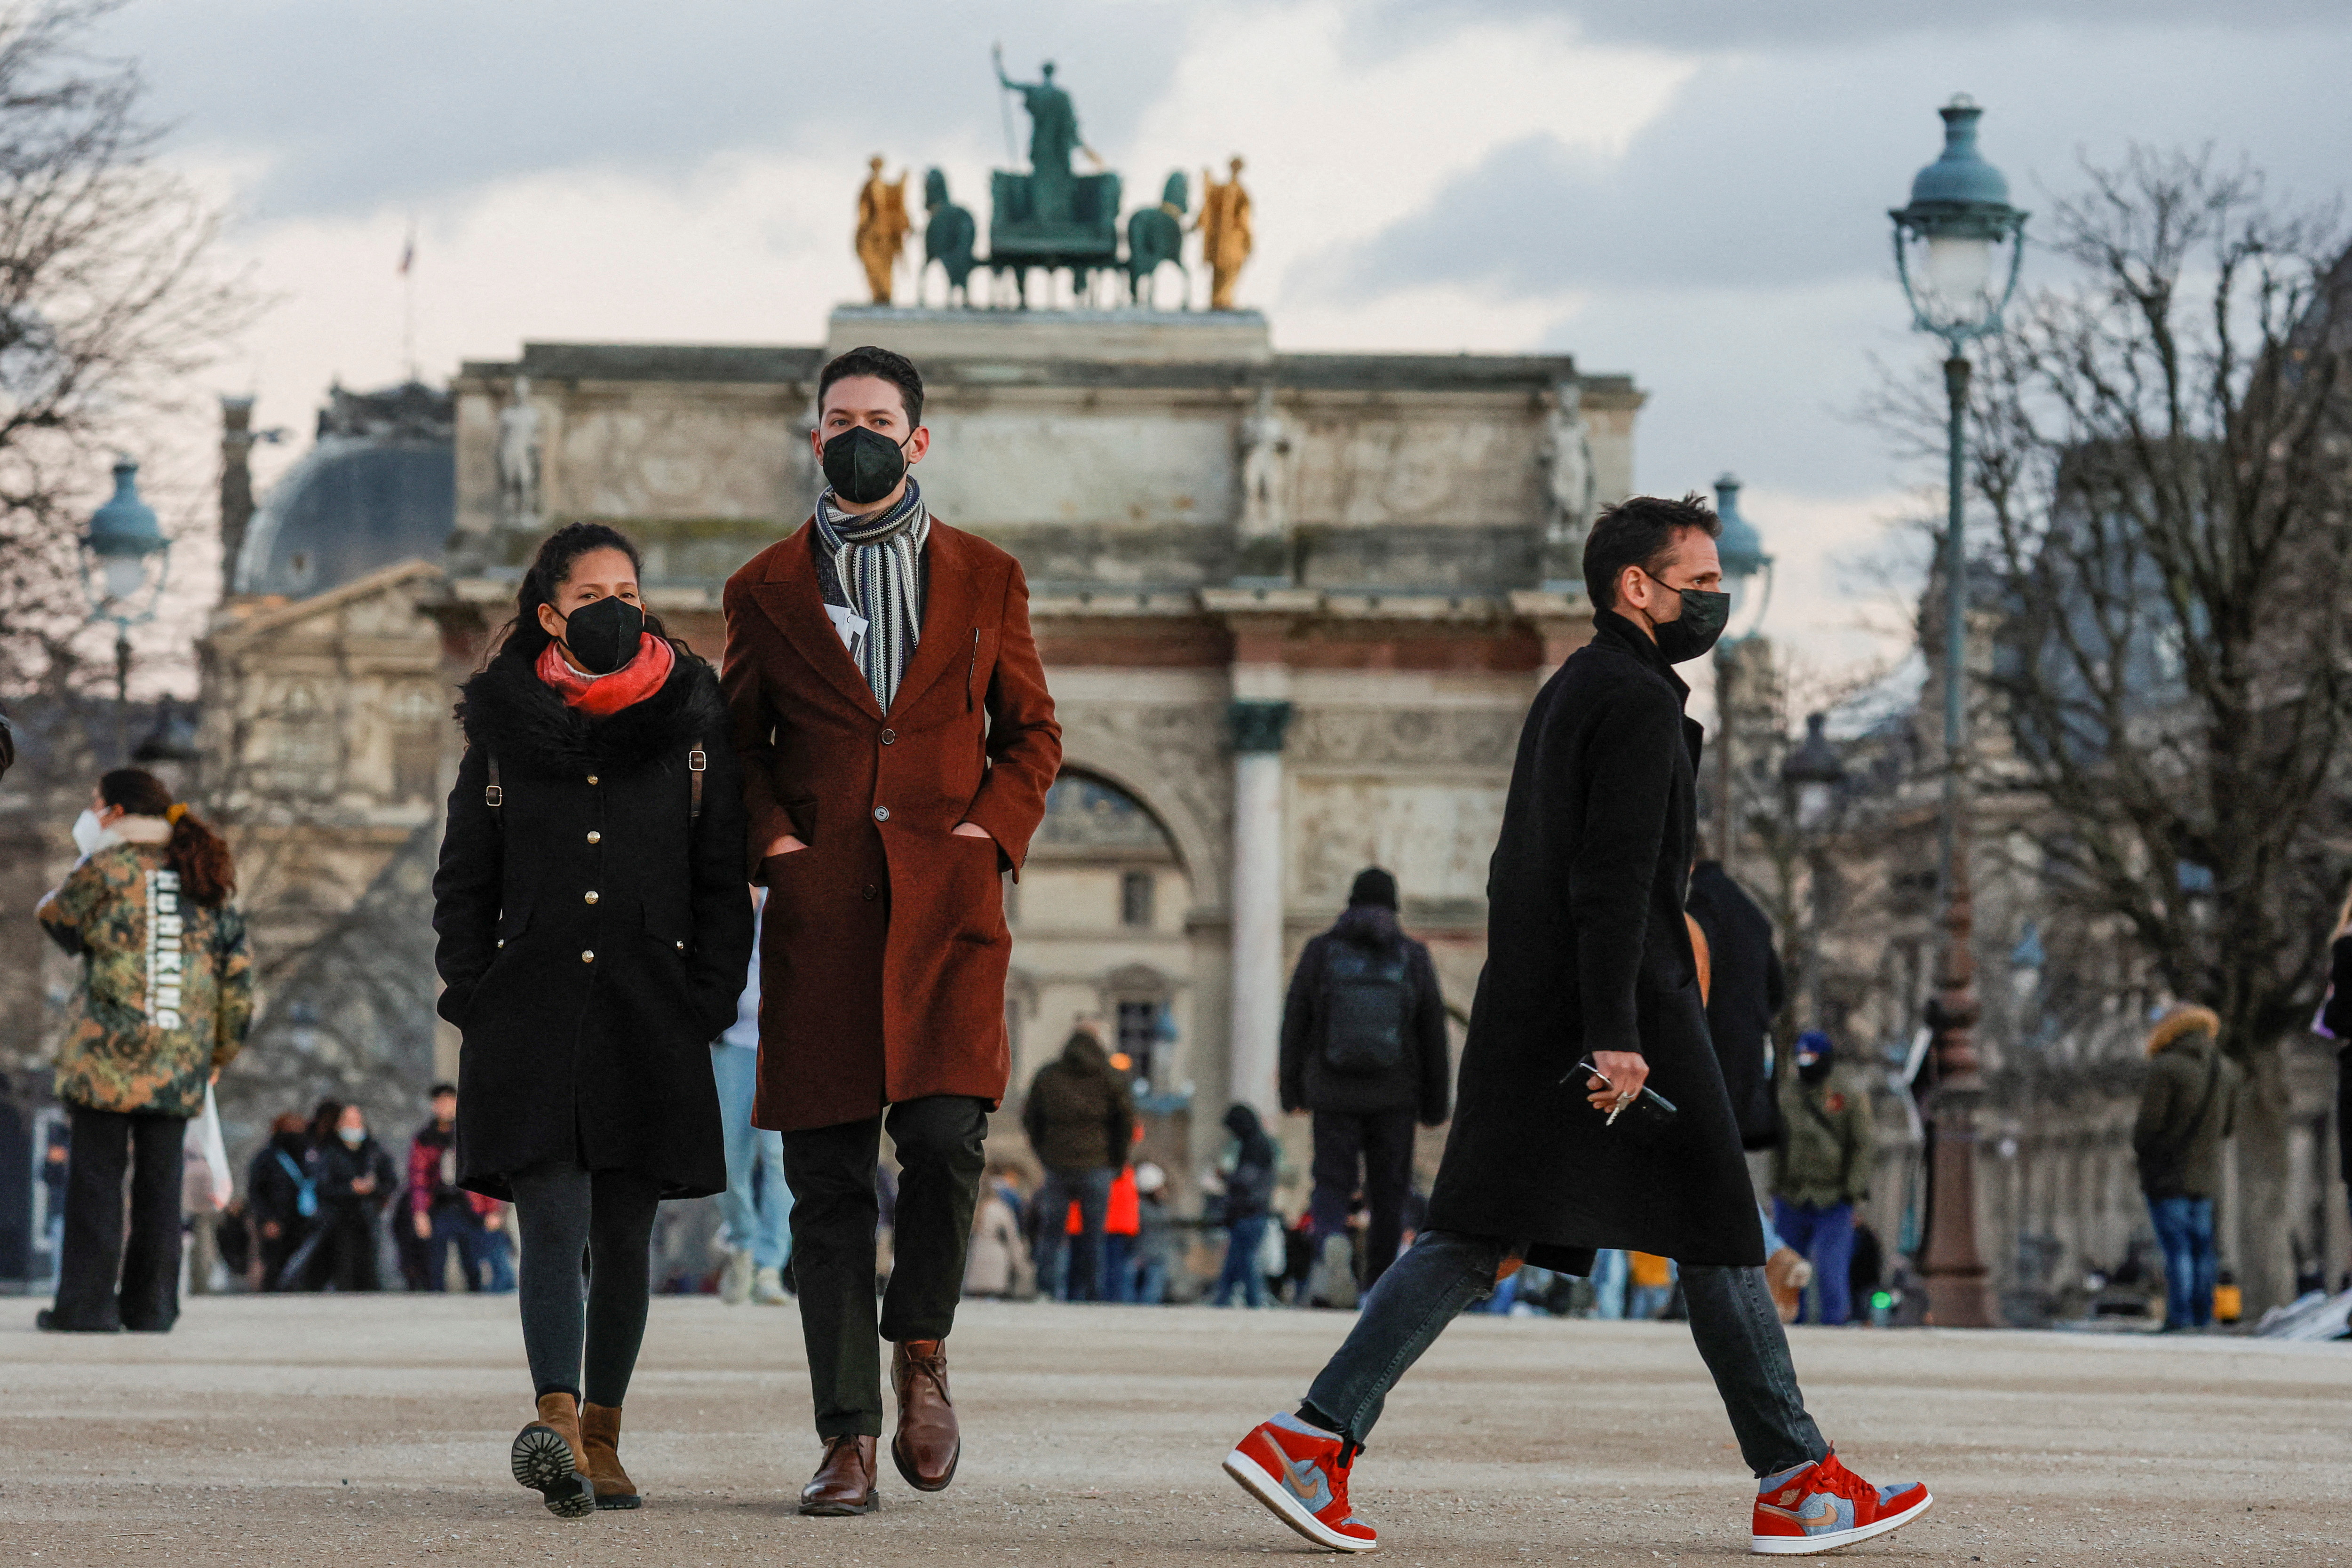 Des personnes portant des masques protecteurs marchent dans le jardin des Tuileries à Paris au milieu de l'épidémie de maladie à coronavirus (COVID-19) en France, le 5 janvier 2022. REUTERS/Gonzalo Fuentes